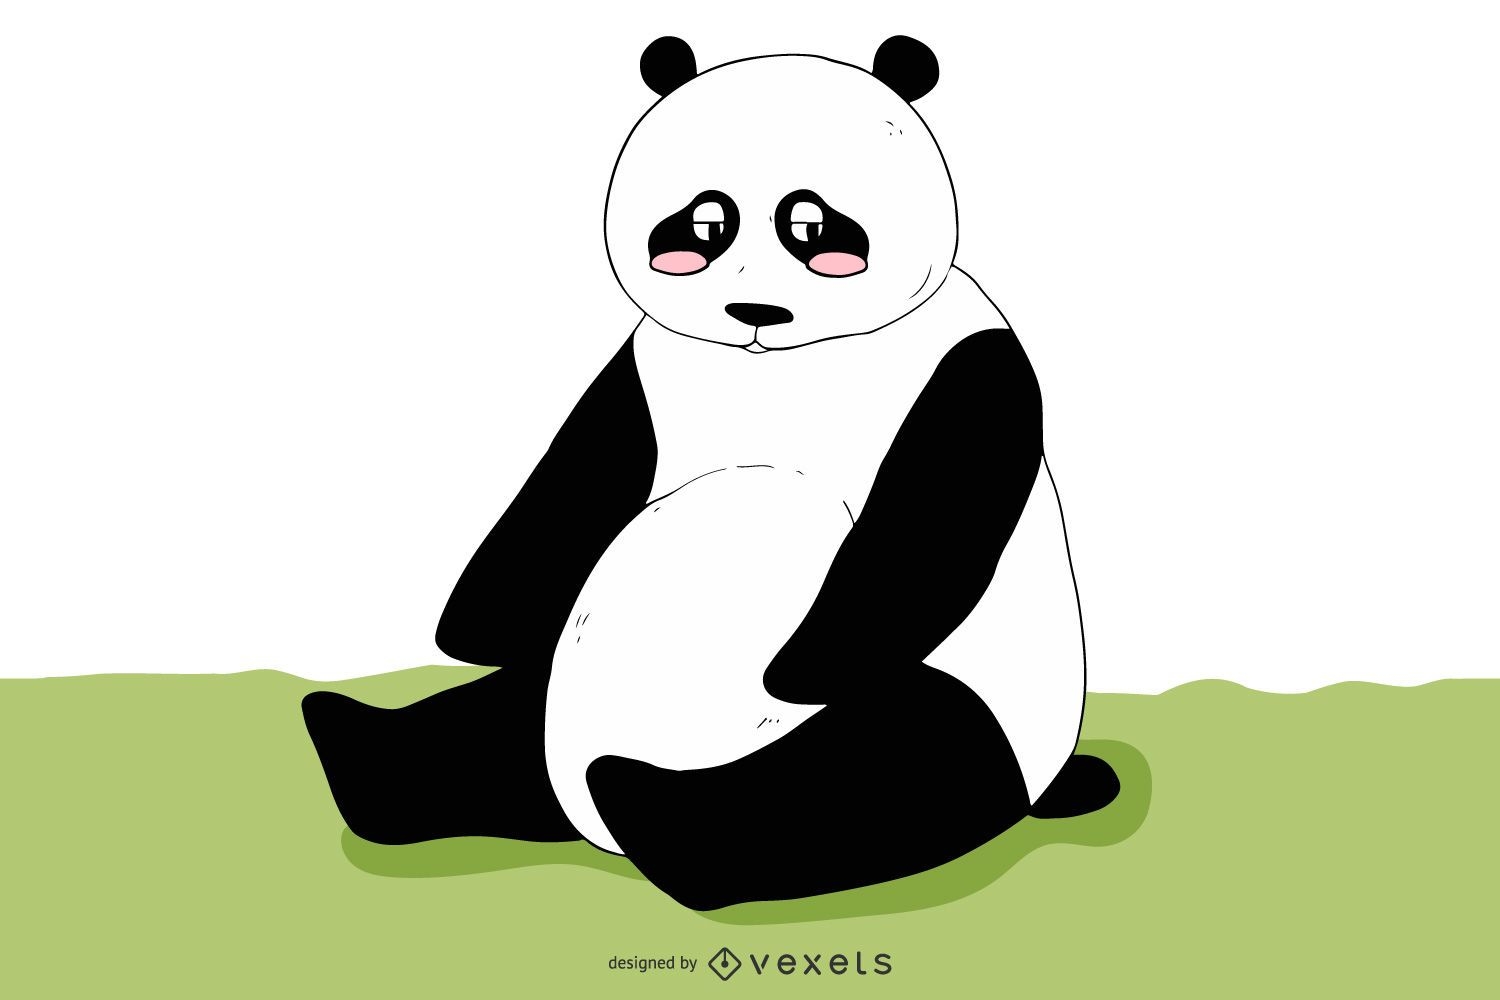 Schwarz & Weiß Funky Sad Panda